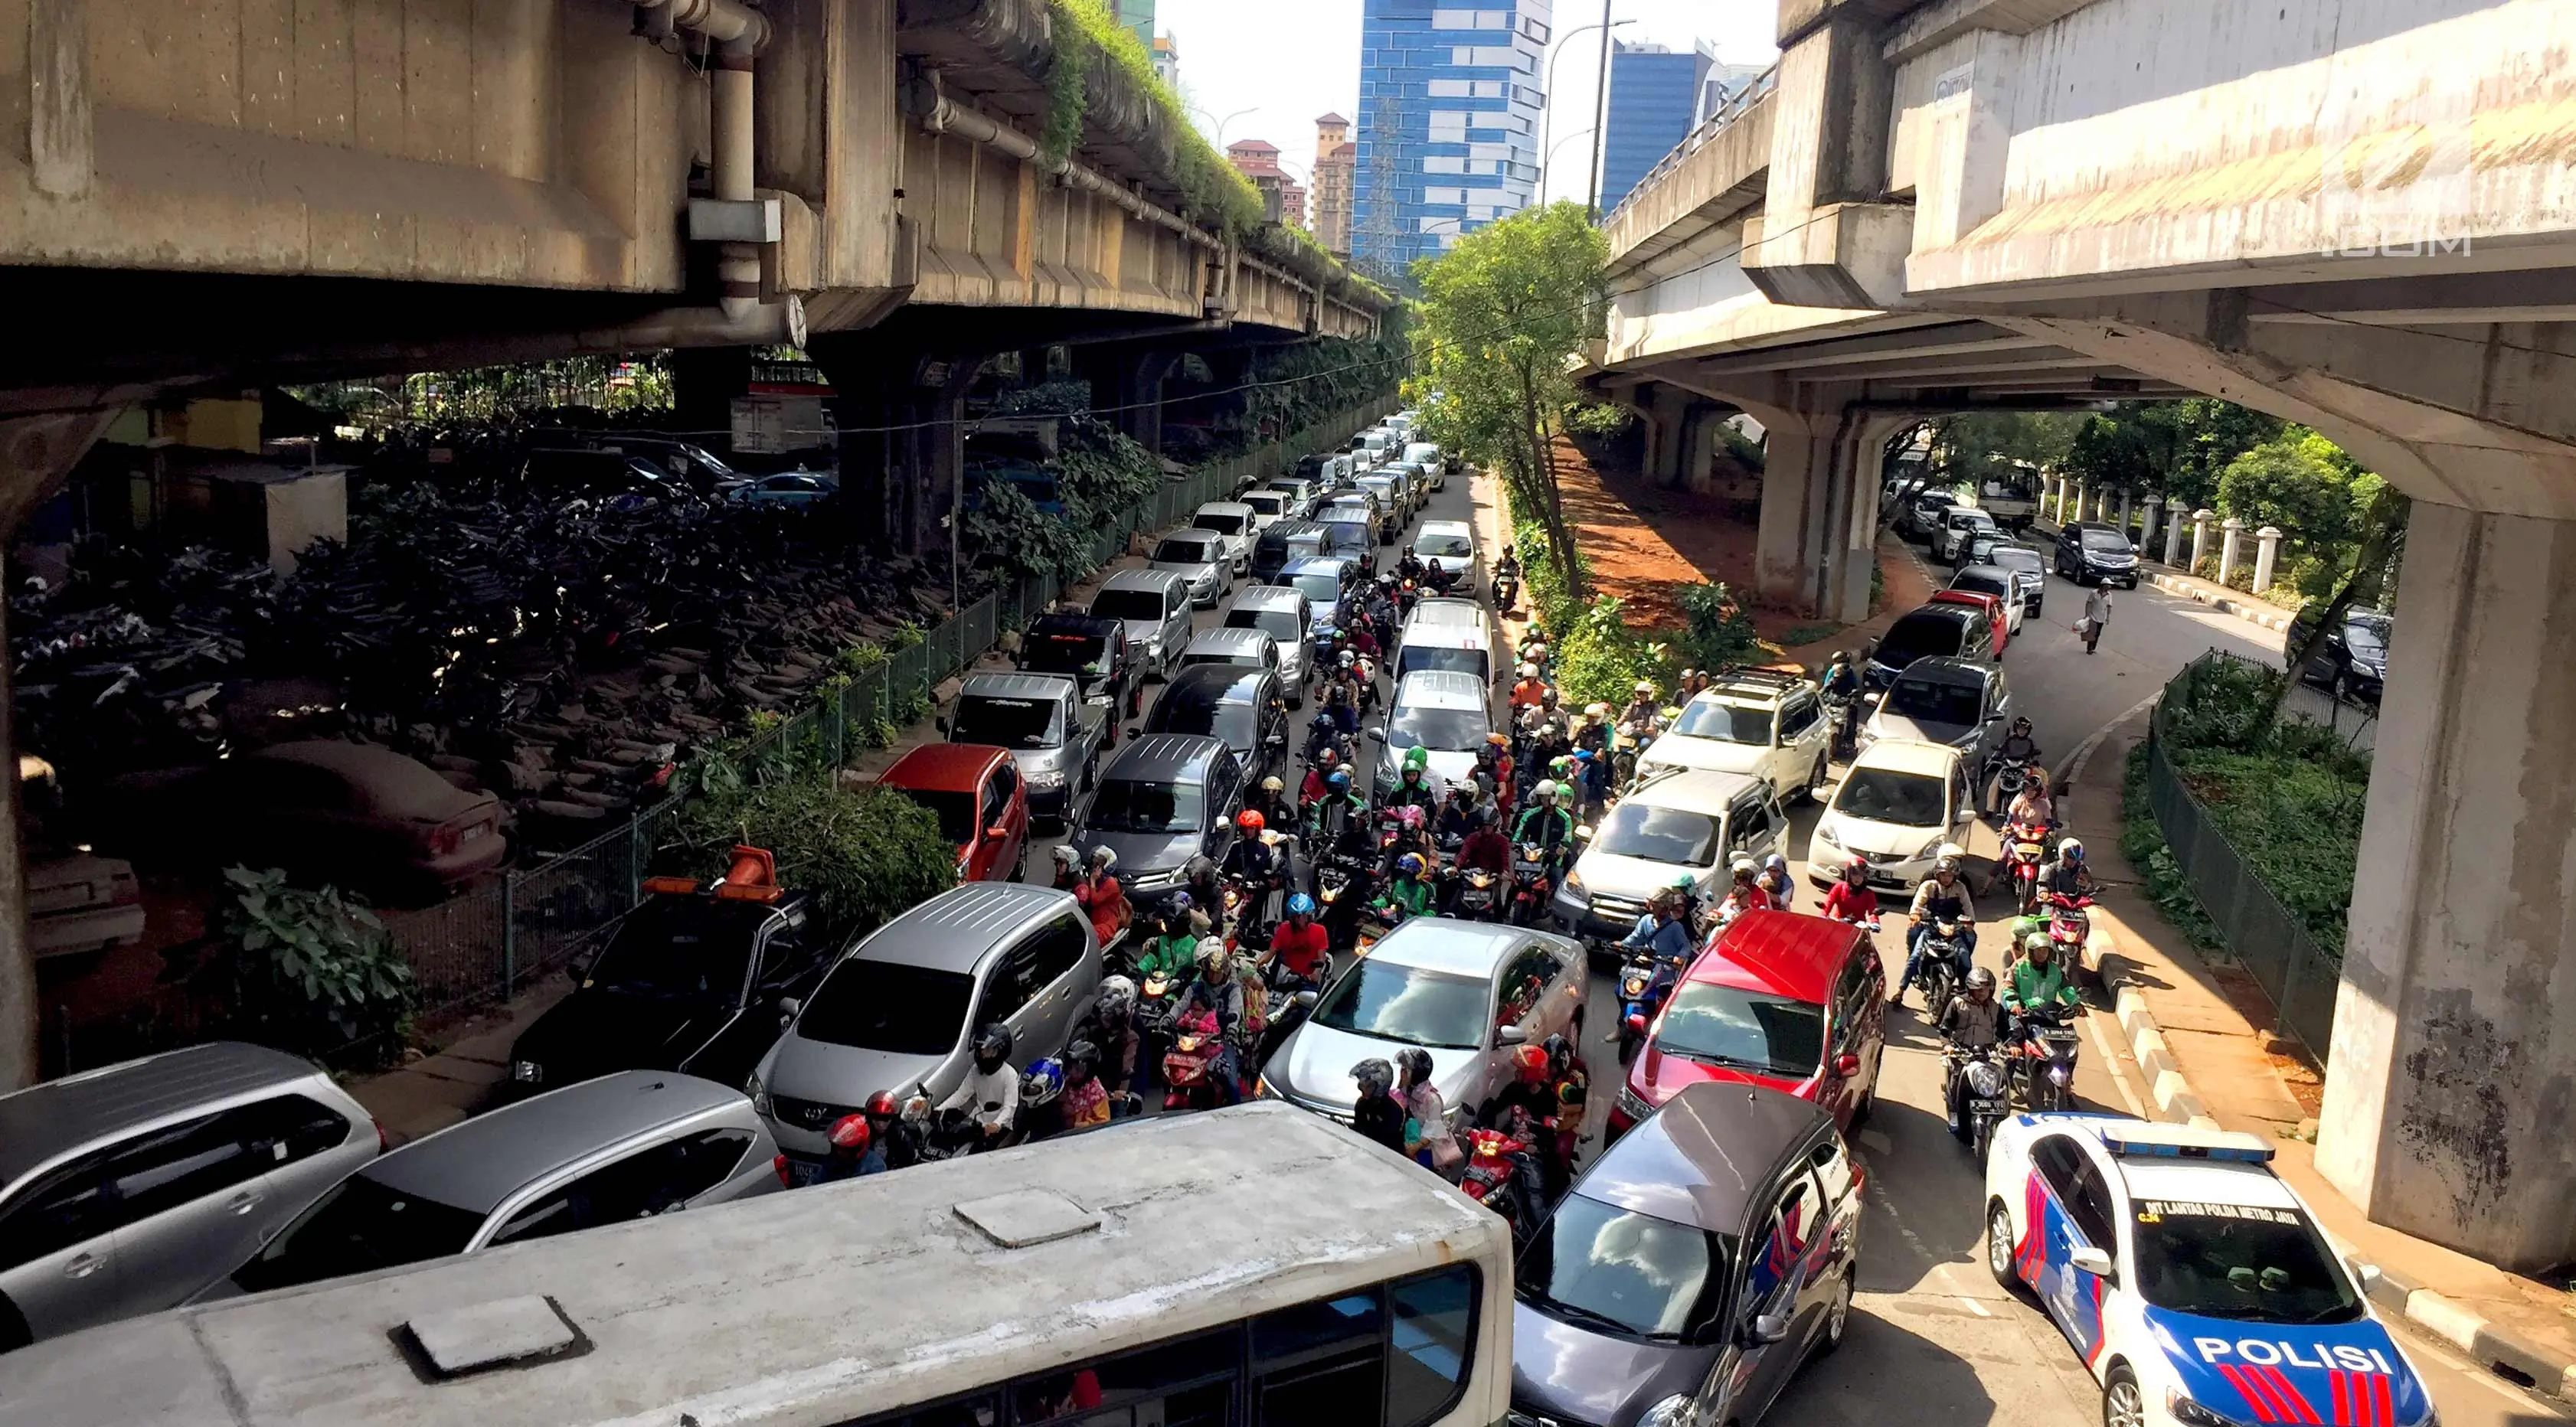 Kendaraan terjebak kemacetan saat melintas di kawasan Tanjung Barat, Jakarta Selatan, Senin (1/1). Tingginya volume kendaraan menyebabkan Jakarta tetap mengalami kemacetan meskipun pada saat libur Tahun Baru. (Liputan6.com/Immanuel Antonius)